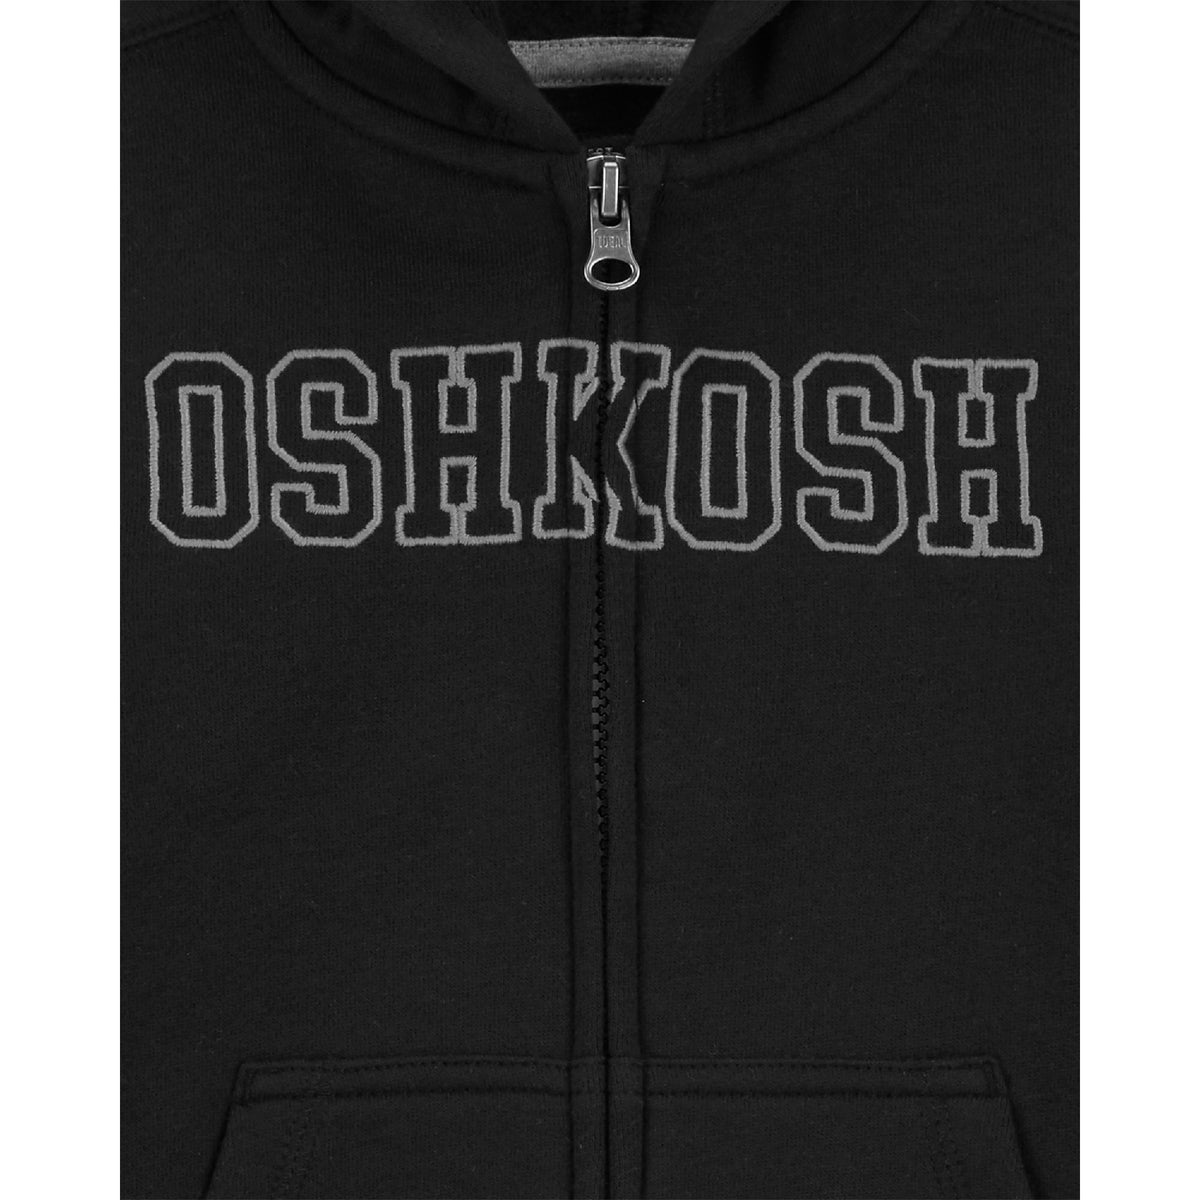 OshKosh 黑色連帽外套(12M-24M)